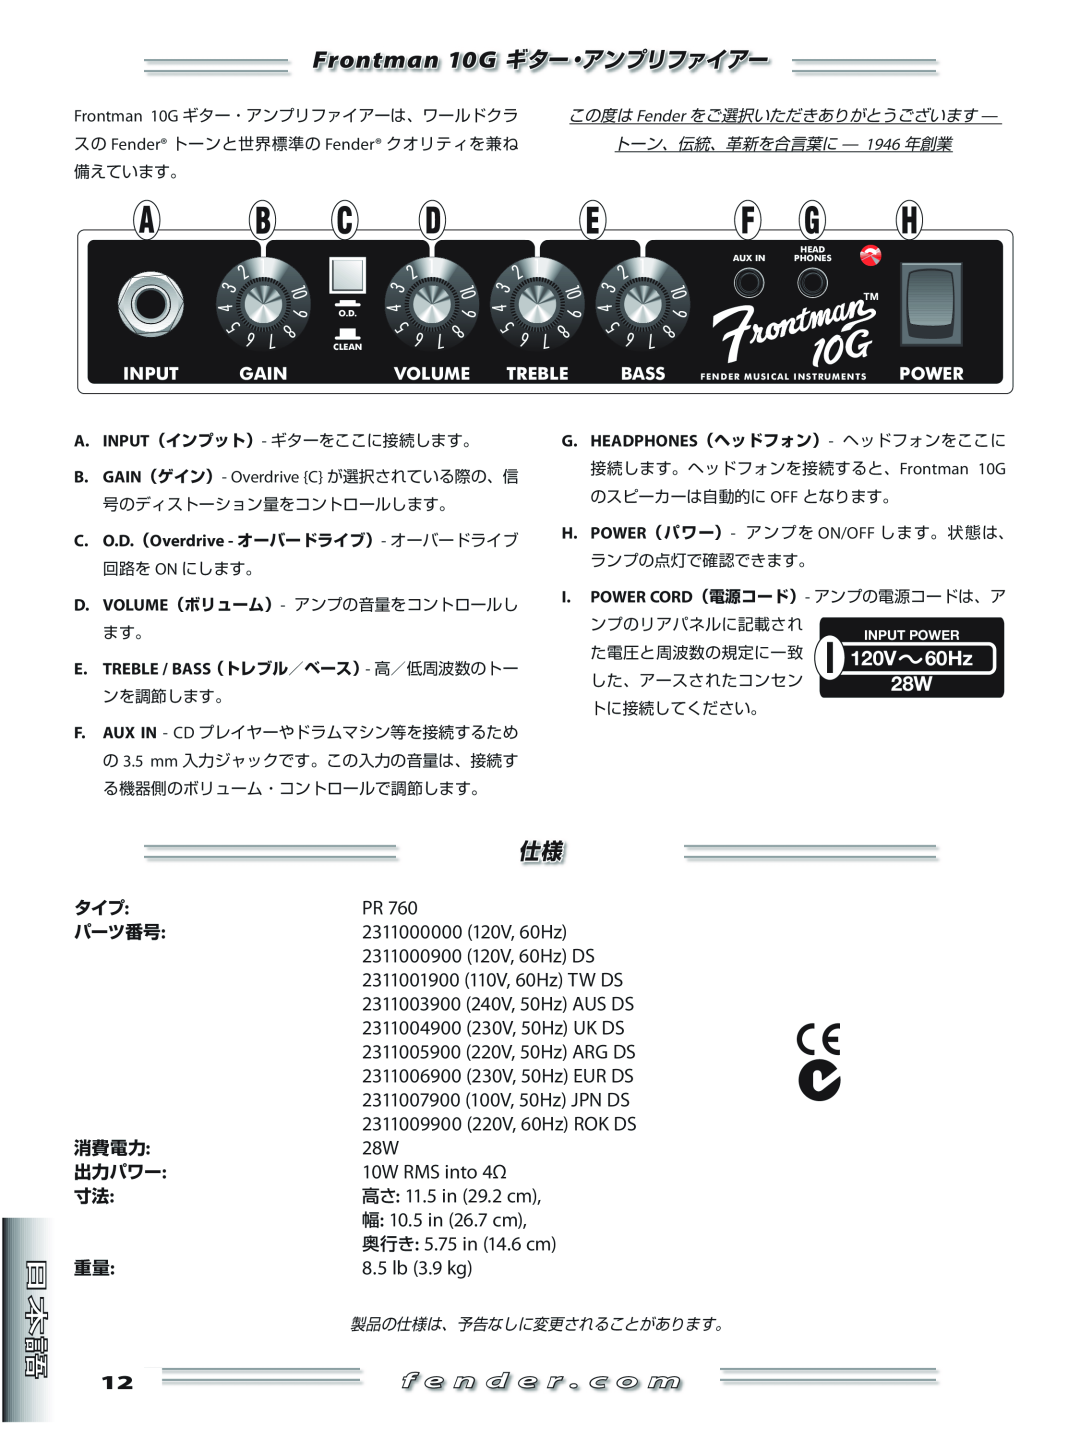 Fender manual Frontman 10G ギター・アンプリファイアー, 60Hz, 120V, f e n d e r . c o m 